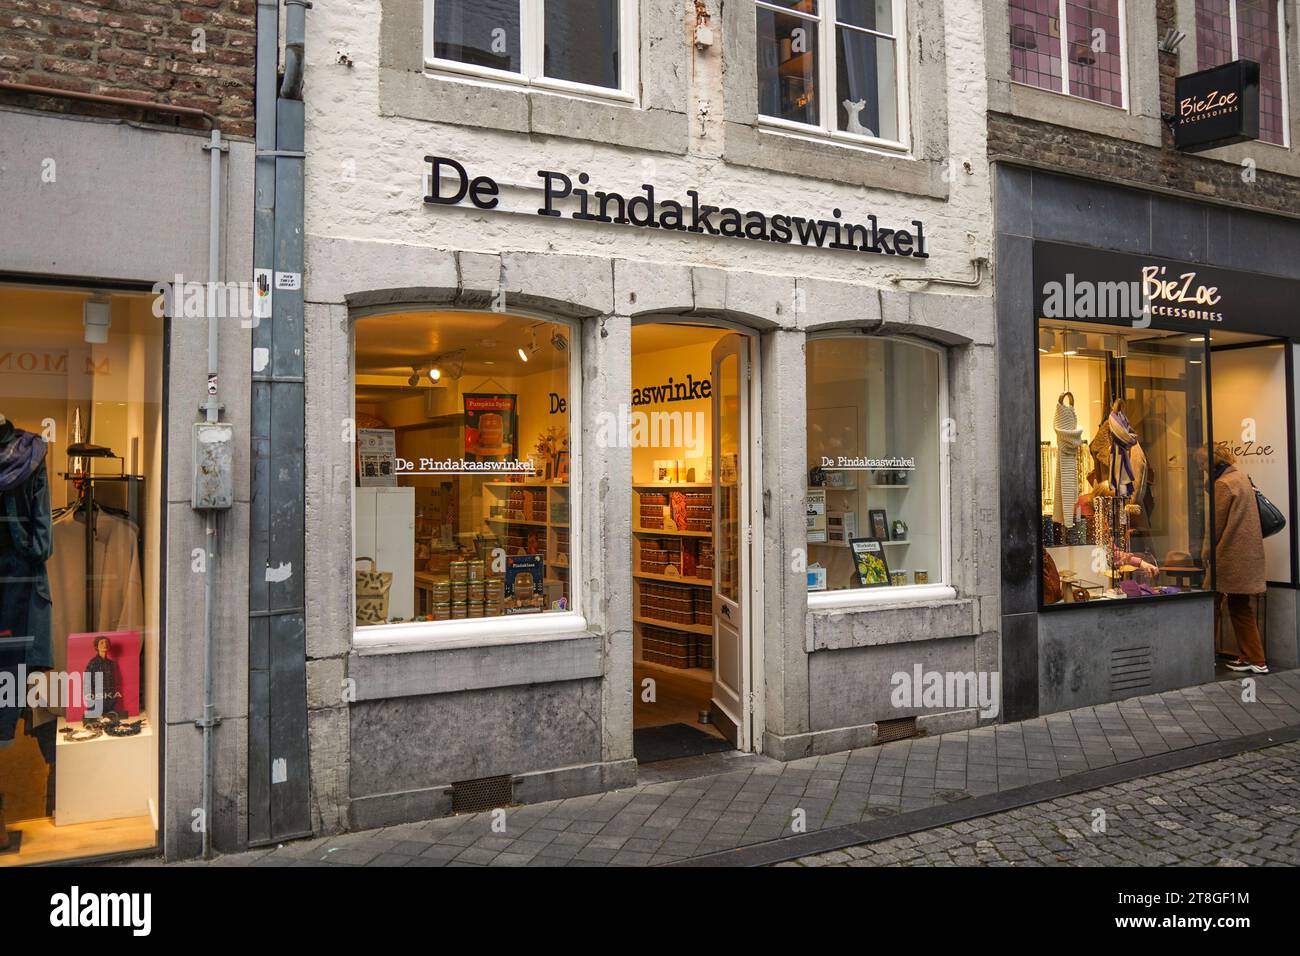 Boutique, de pindakaaswinkel, vente de beurre d'arachide naturel, Maastricht, Limbourg, pays-Bas Banque D'Images